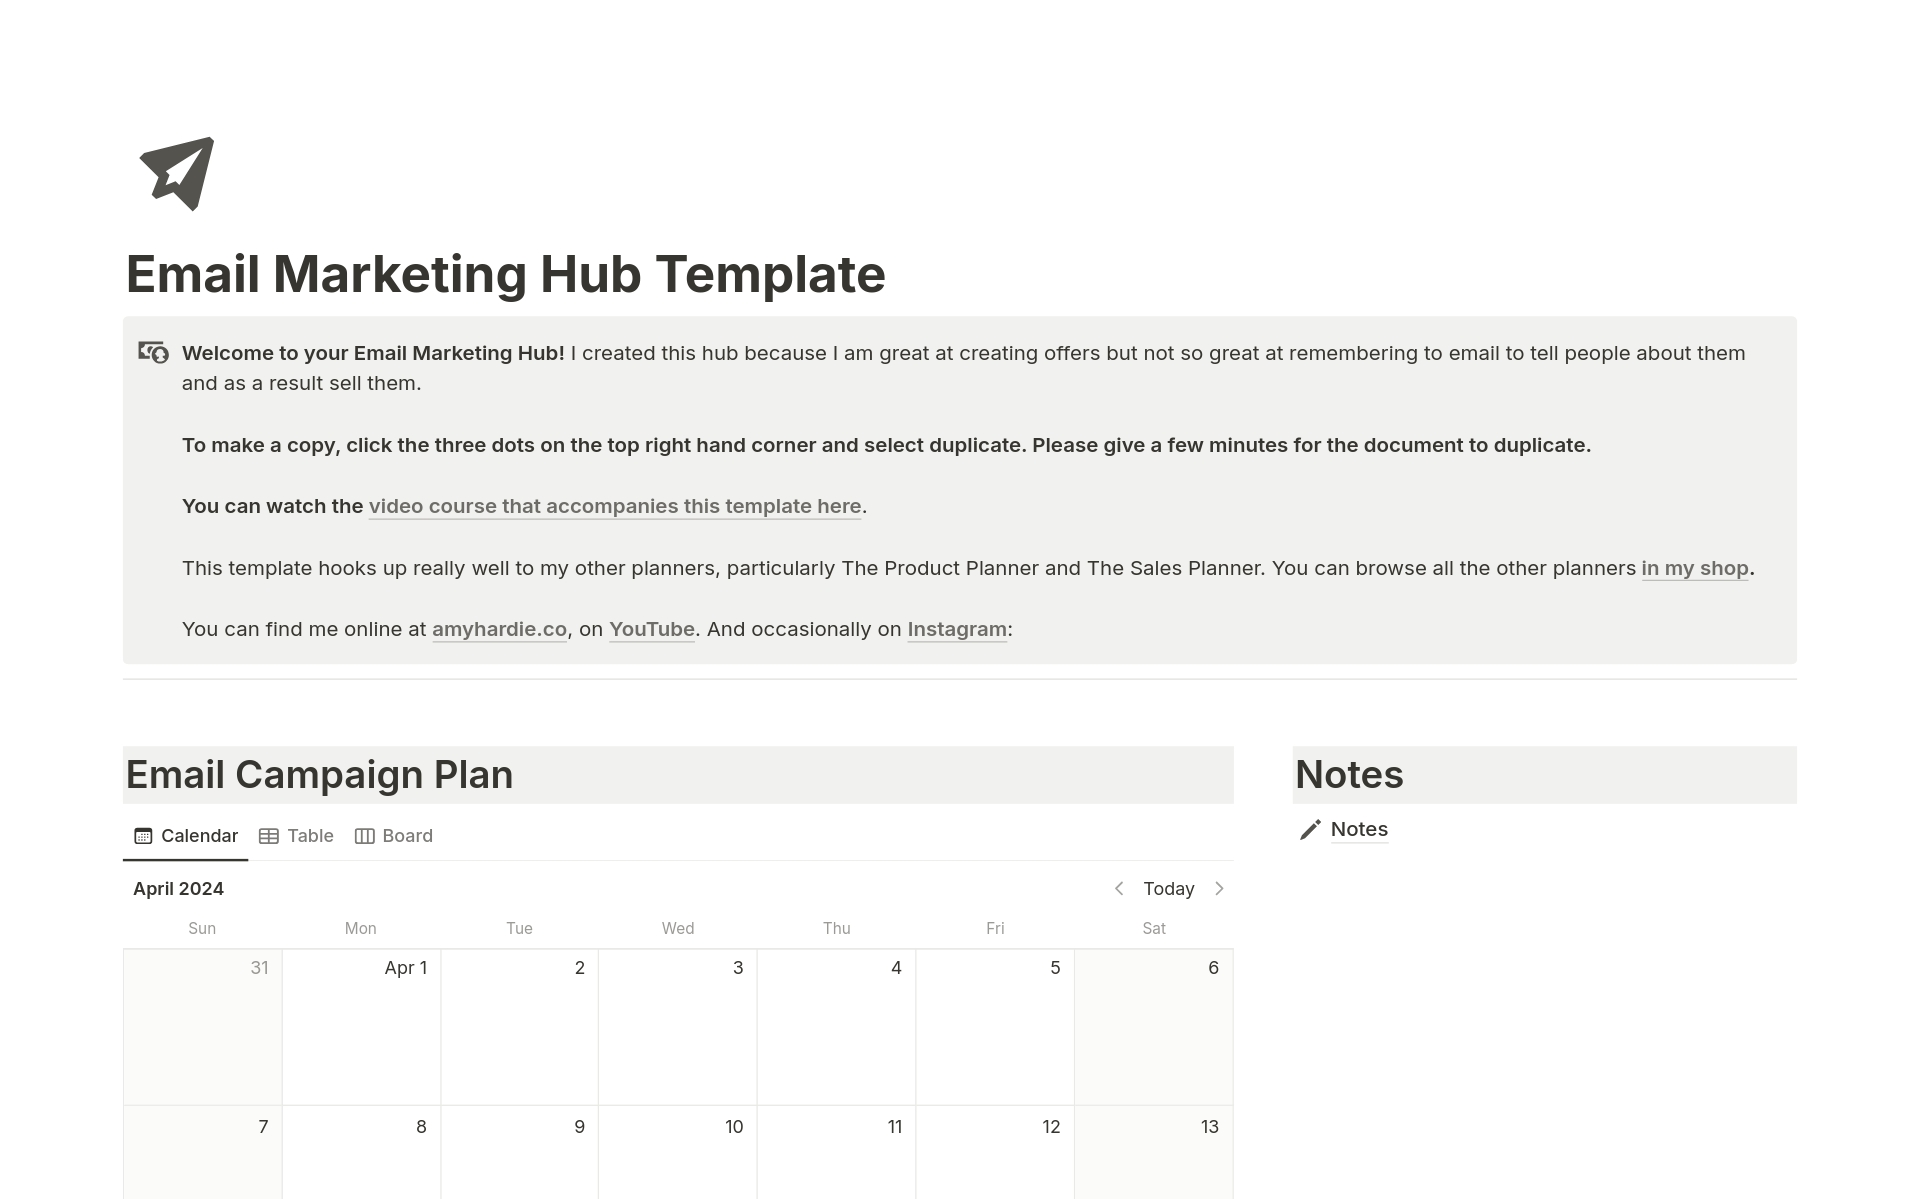 Vista previa de una plantilla para Email Marketing Hub